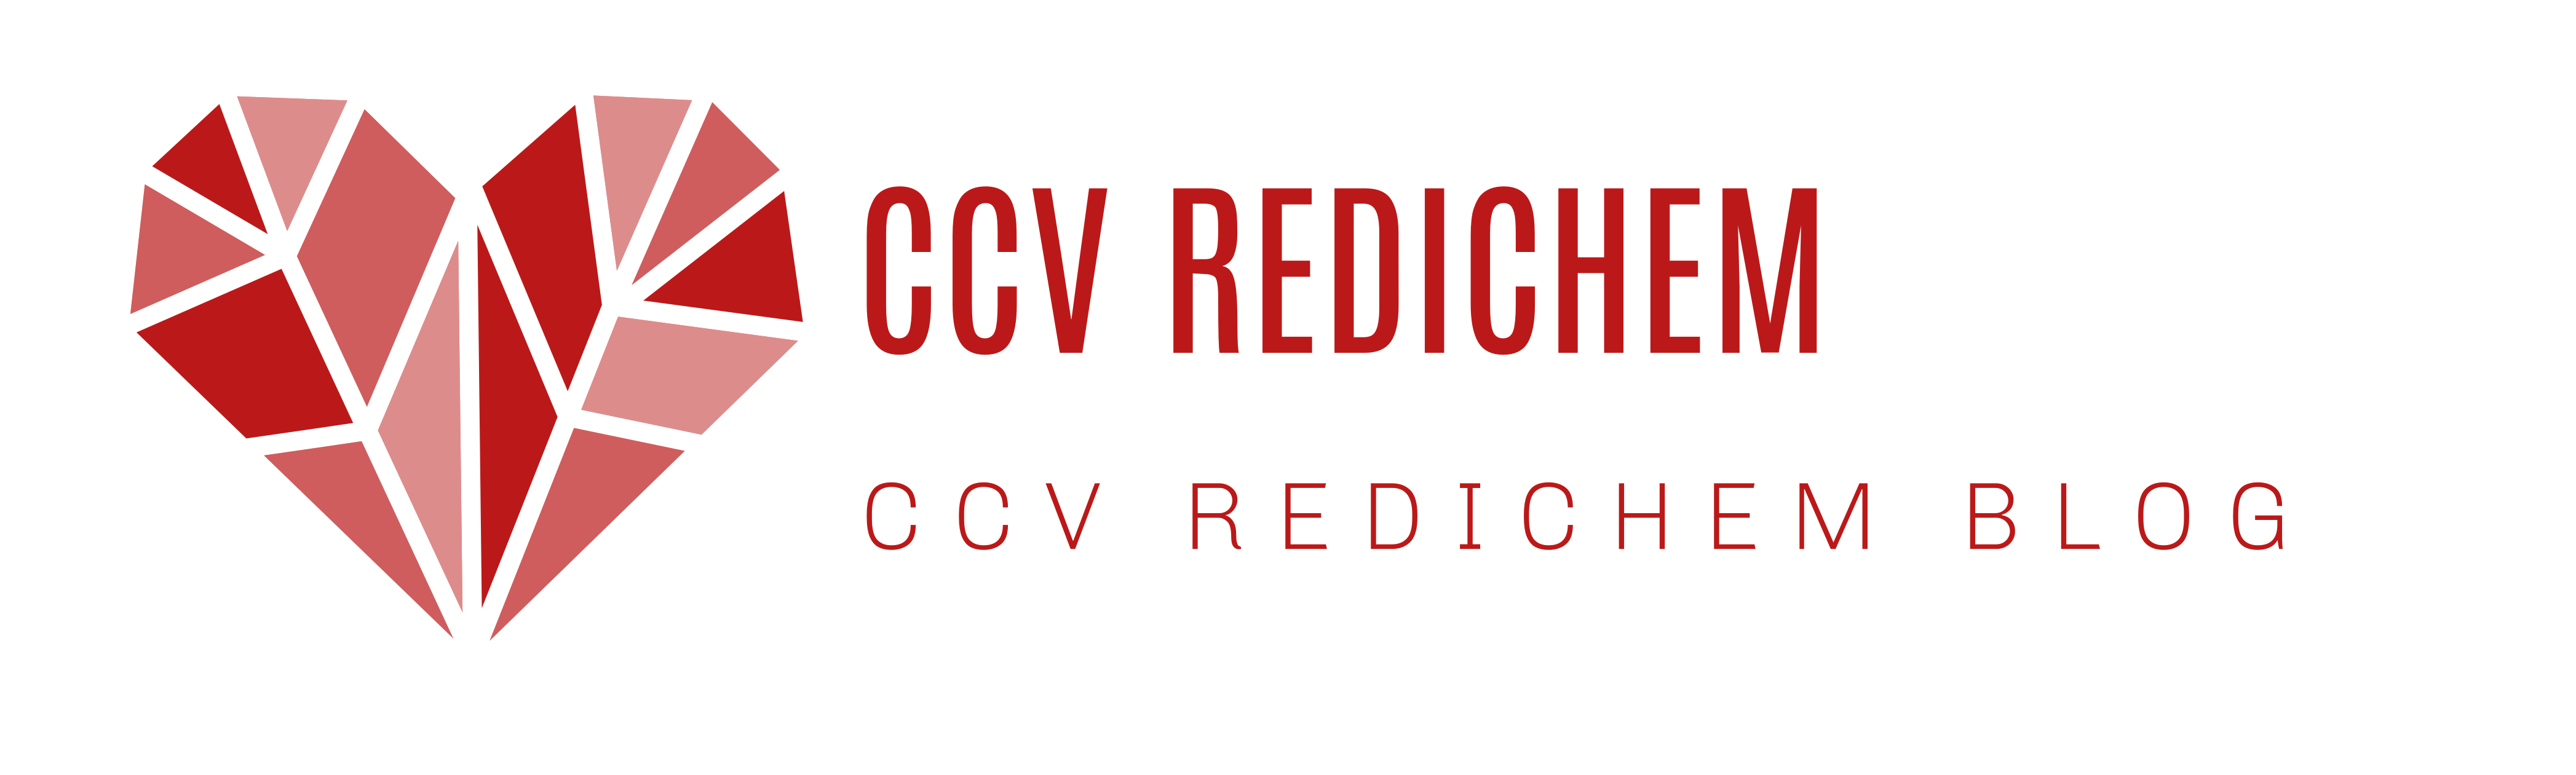 CCV Redichem